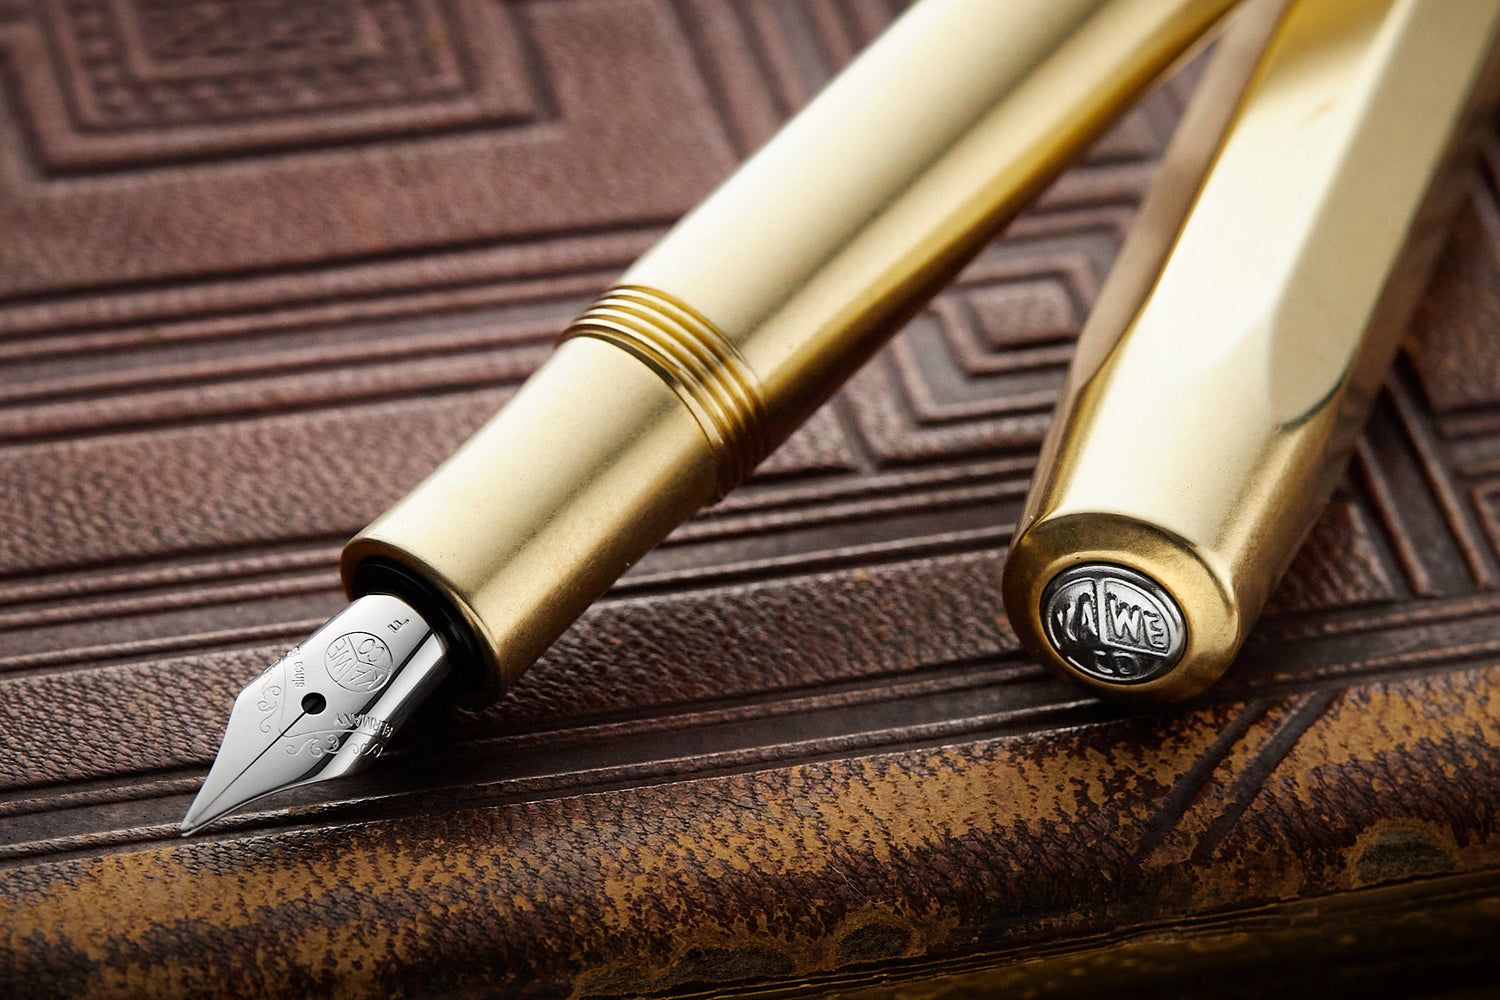 Kaweco Brass Sport Mechanical Pencil Writing K10000923